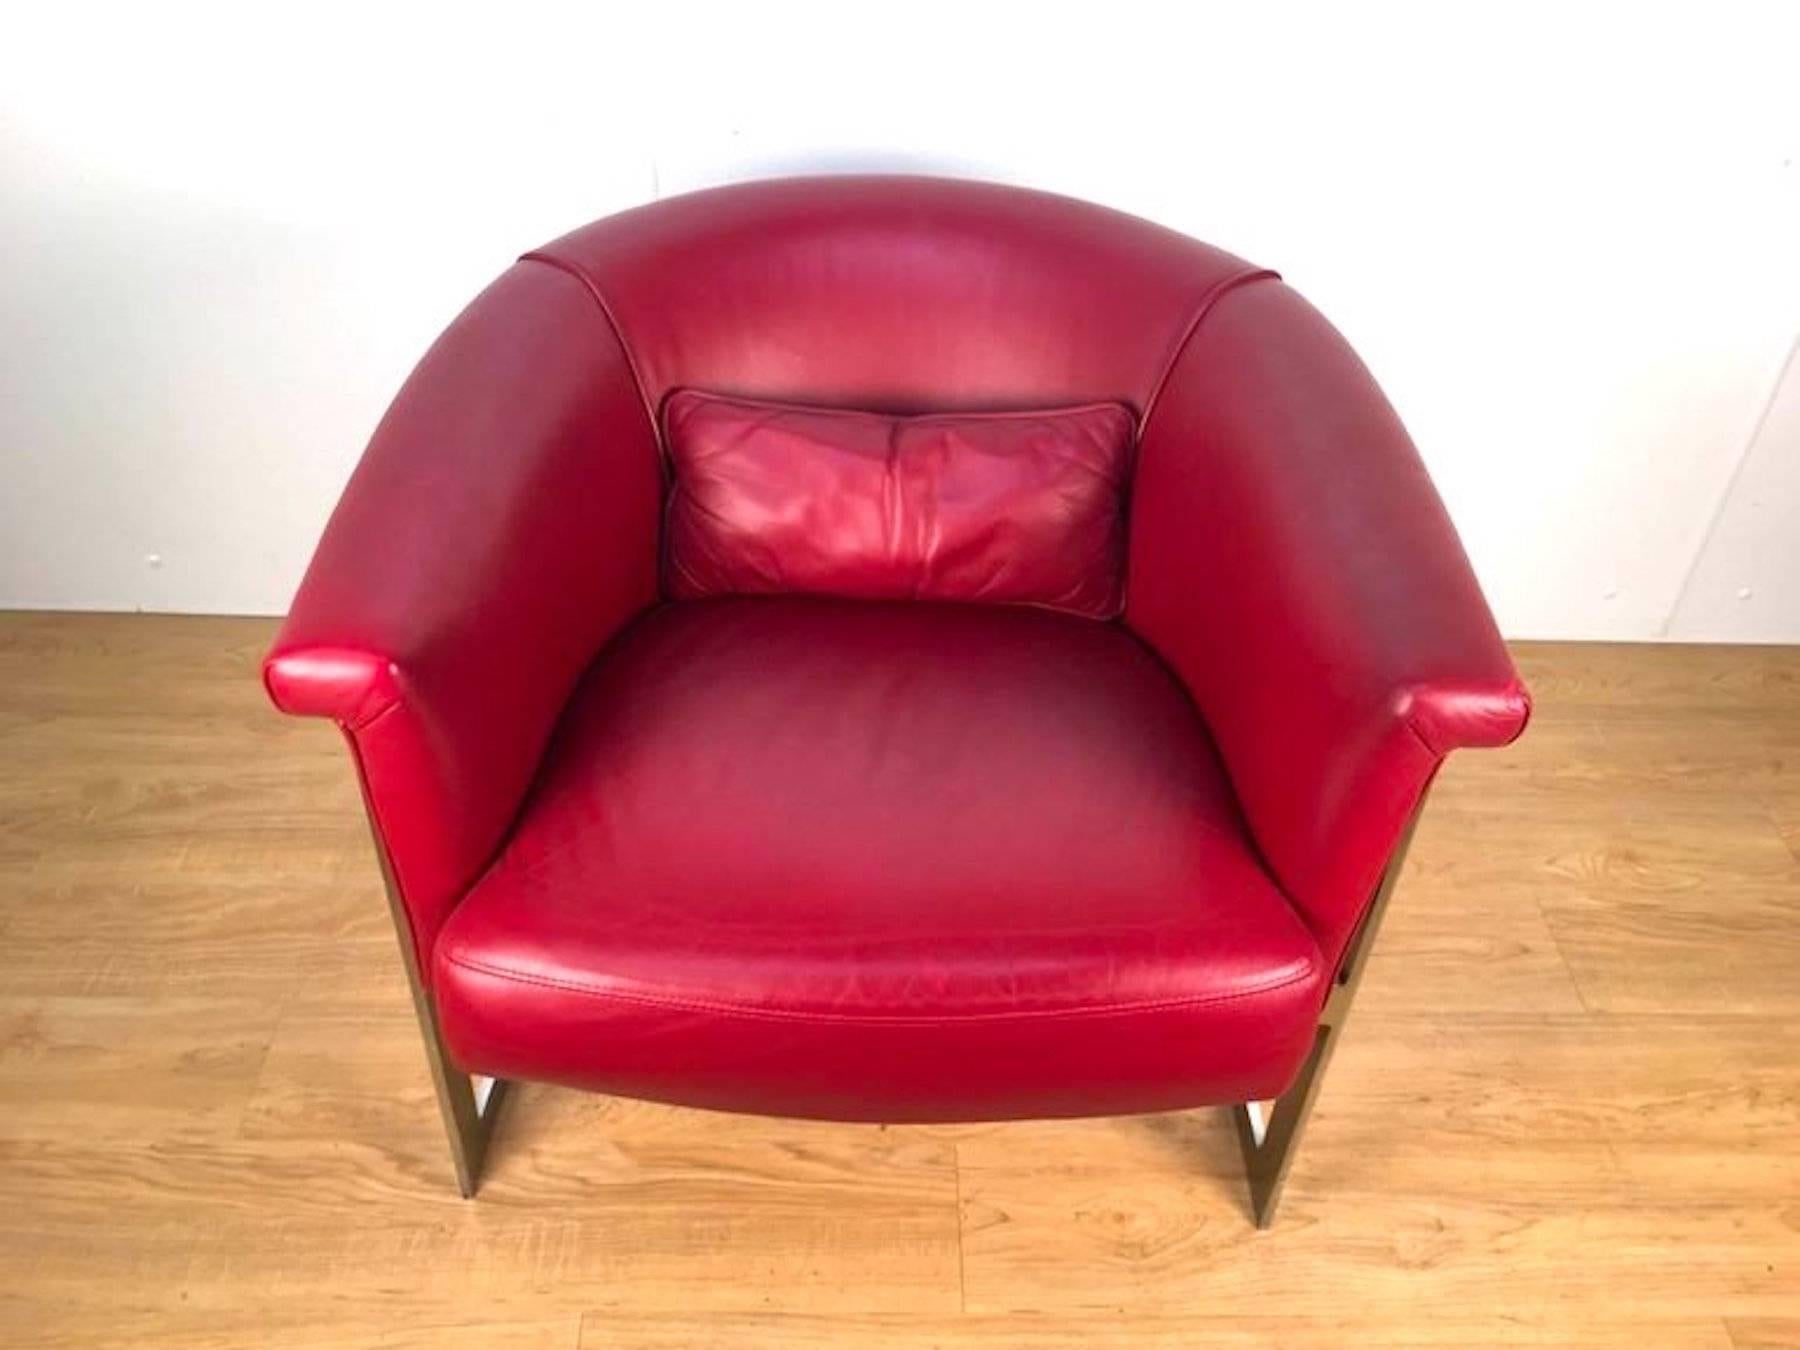 Chaise longue arrondie de style John Stuart en cuir rouge personnalisé. Un cadre clair et net avec une sellerie en cuir rouge riche et un coussin d'appoint.